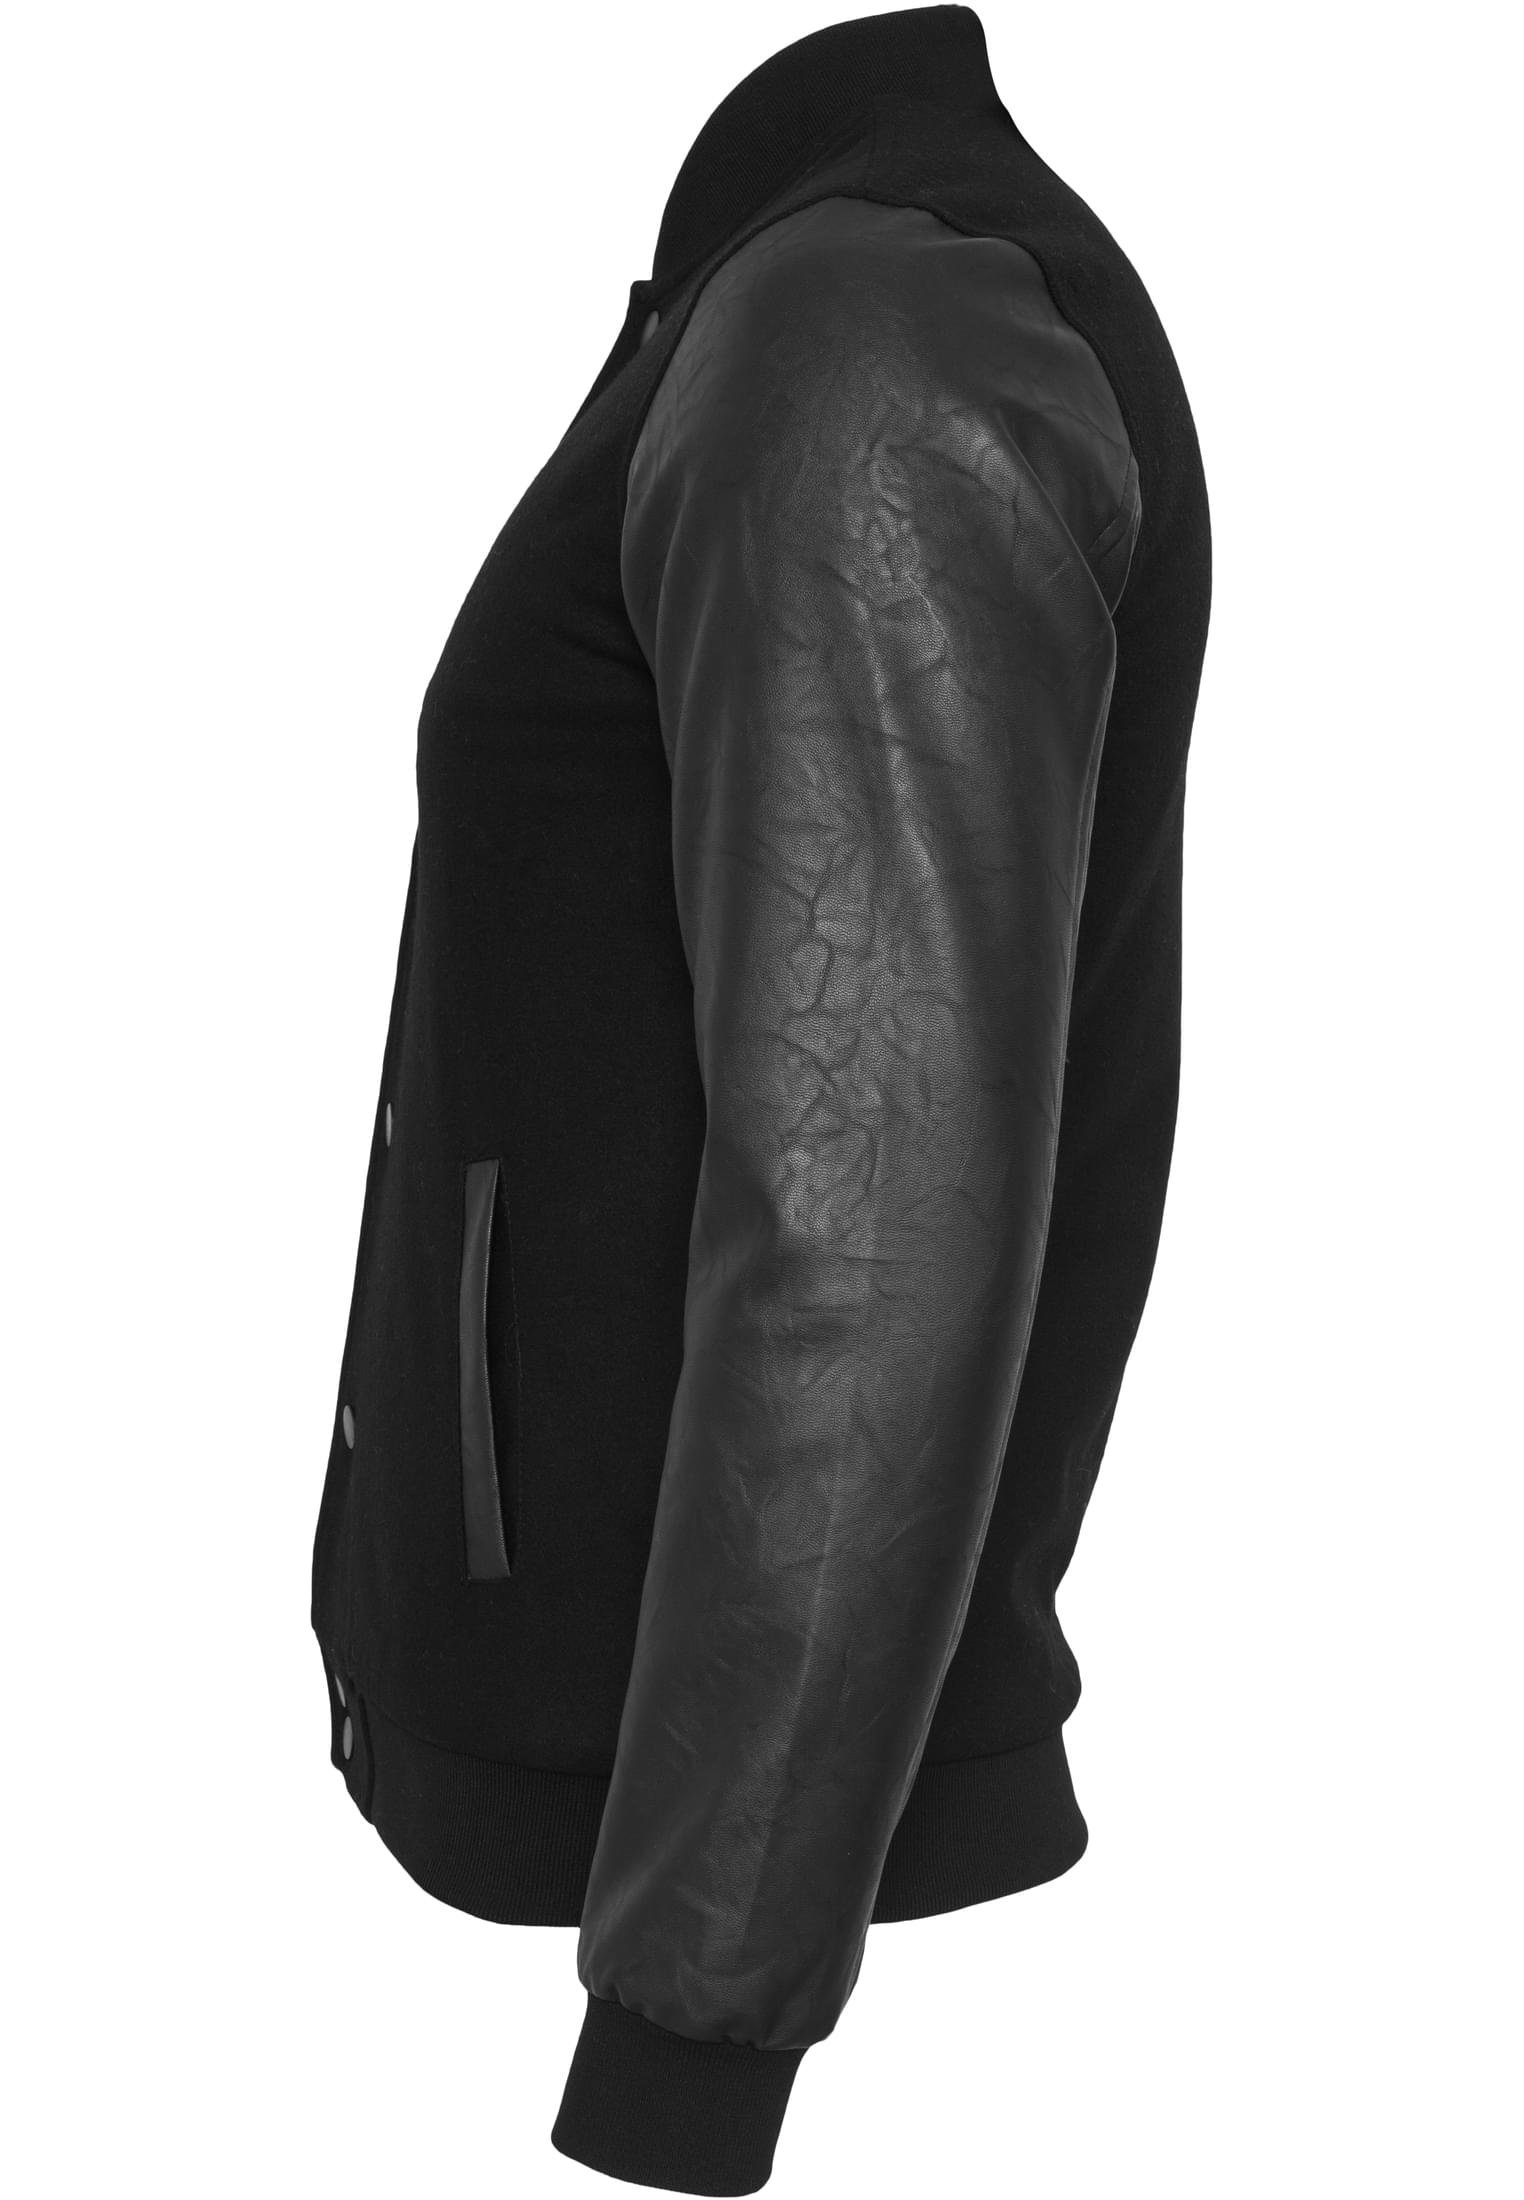 Oldschool black/black (1-St) Outdoorjacke College URBAN Jacket CLASSICS Herren